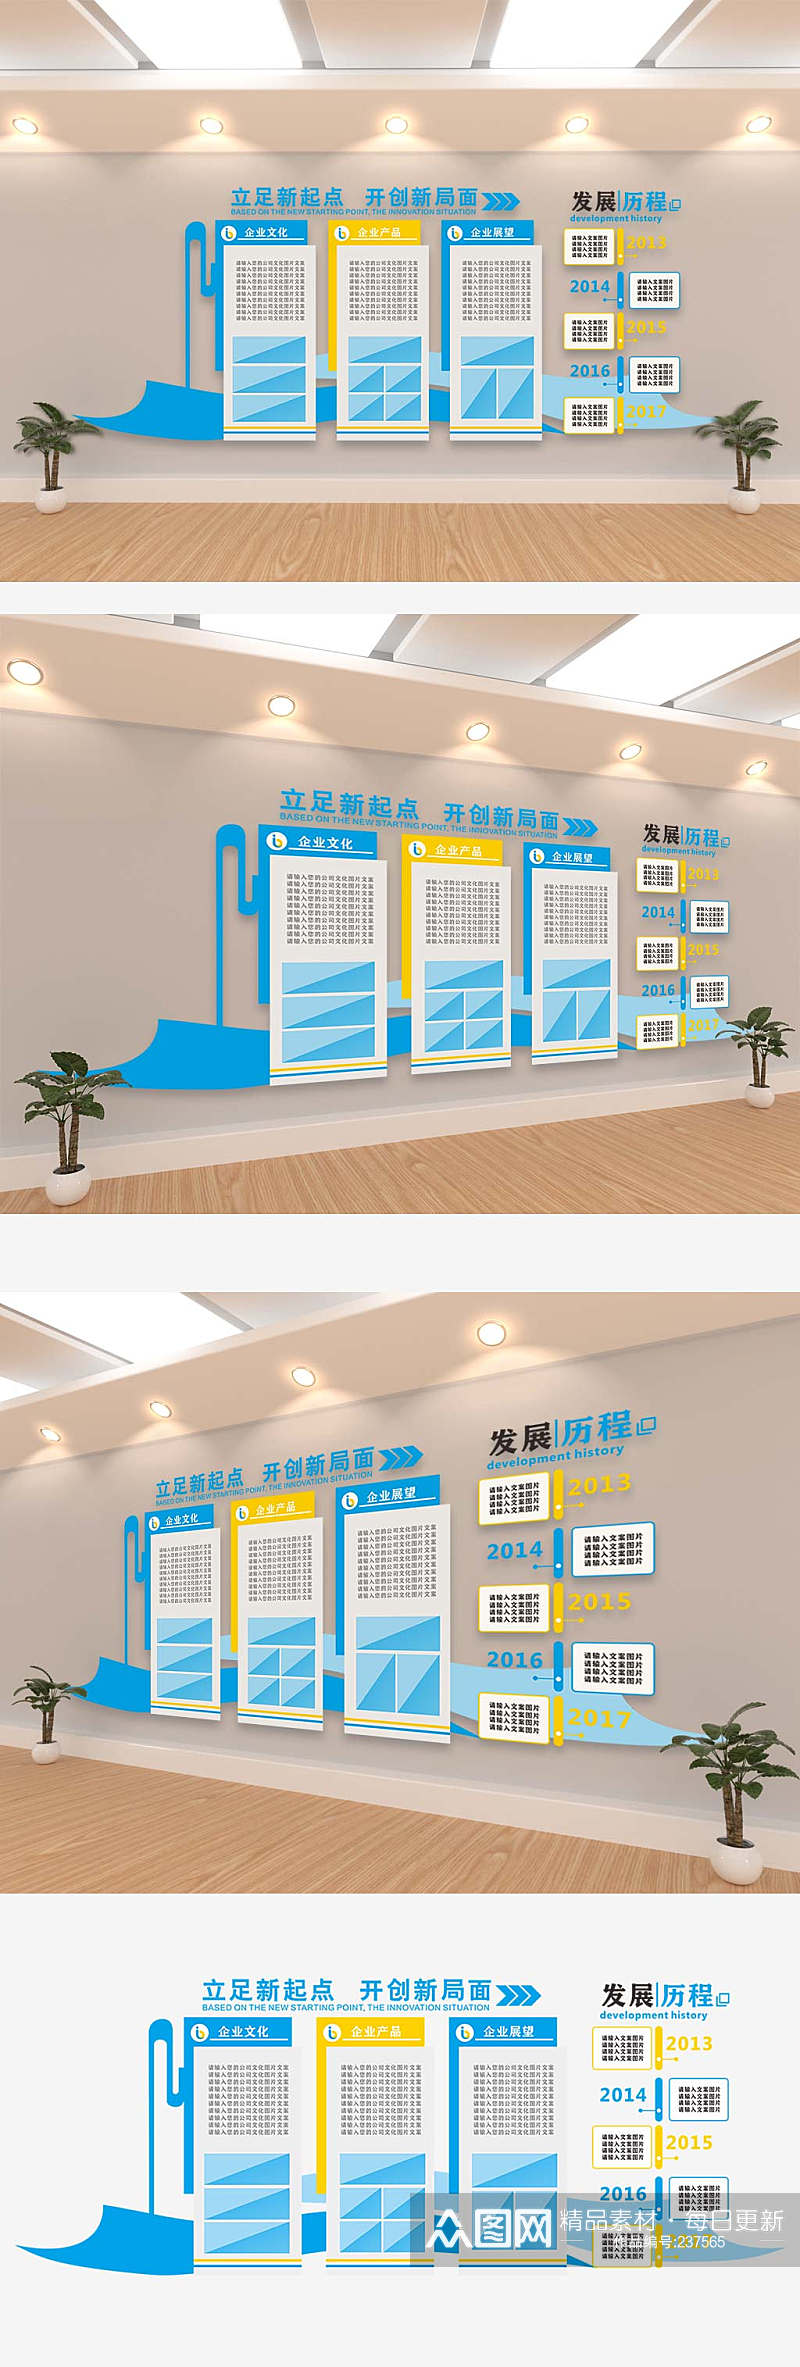 企业部门内部文化墙企业形象墙设计图片素材